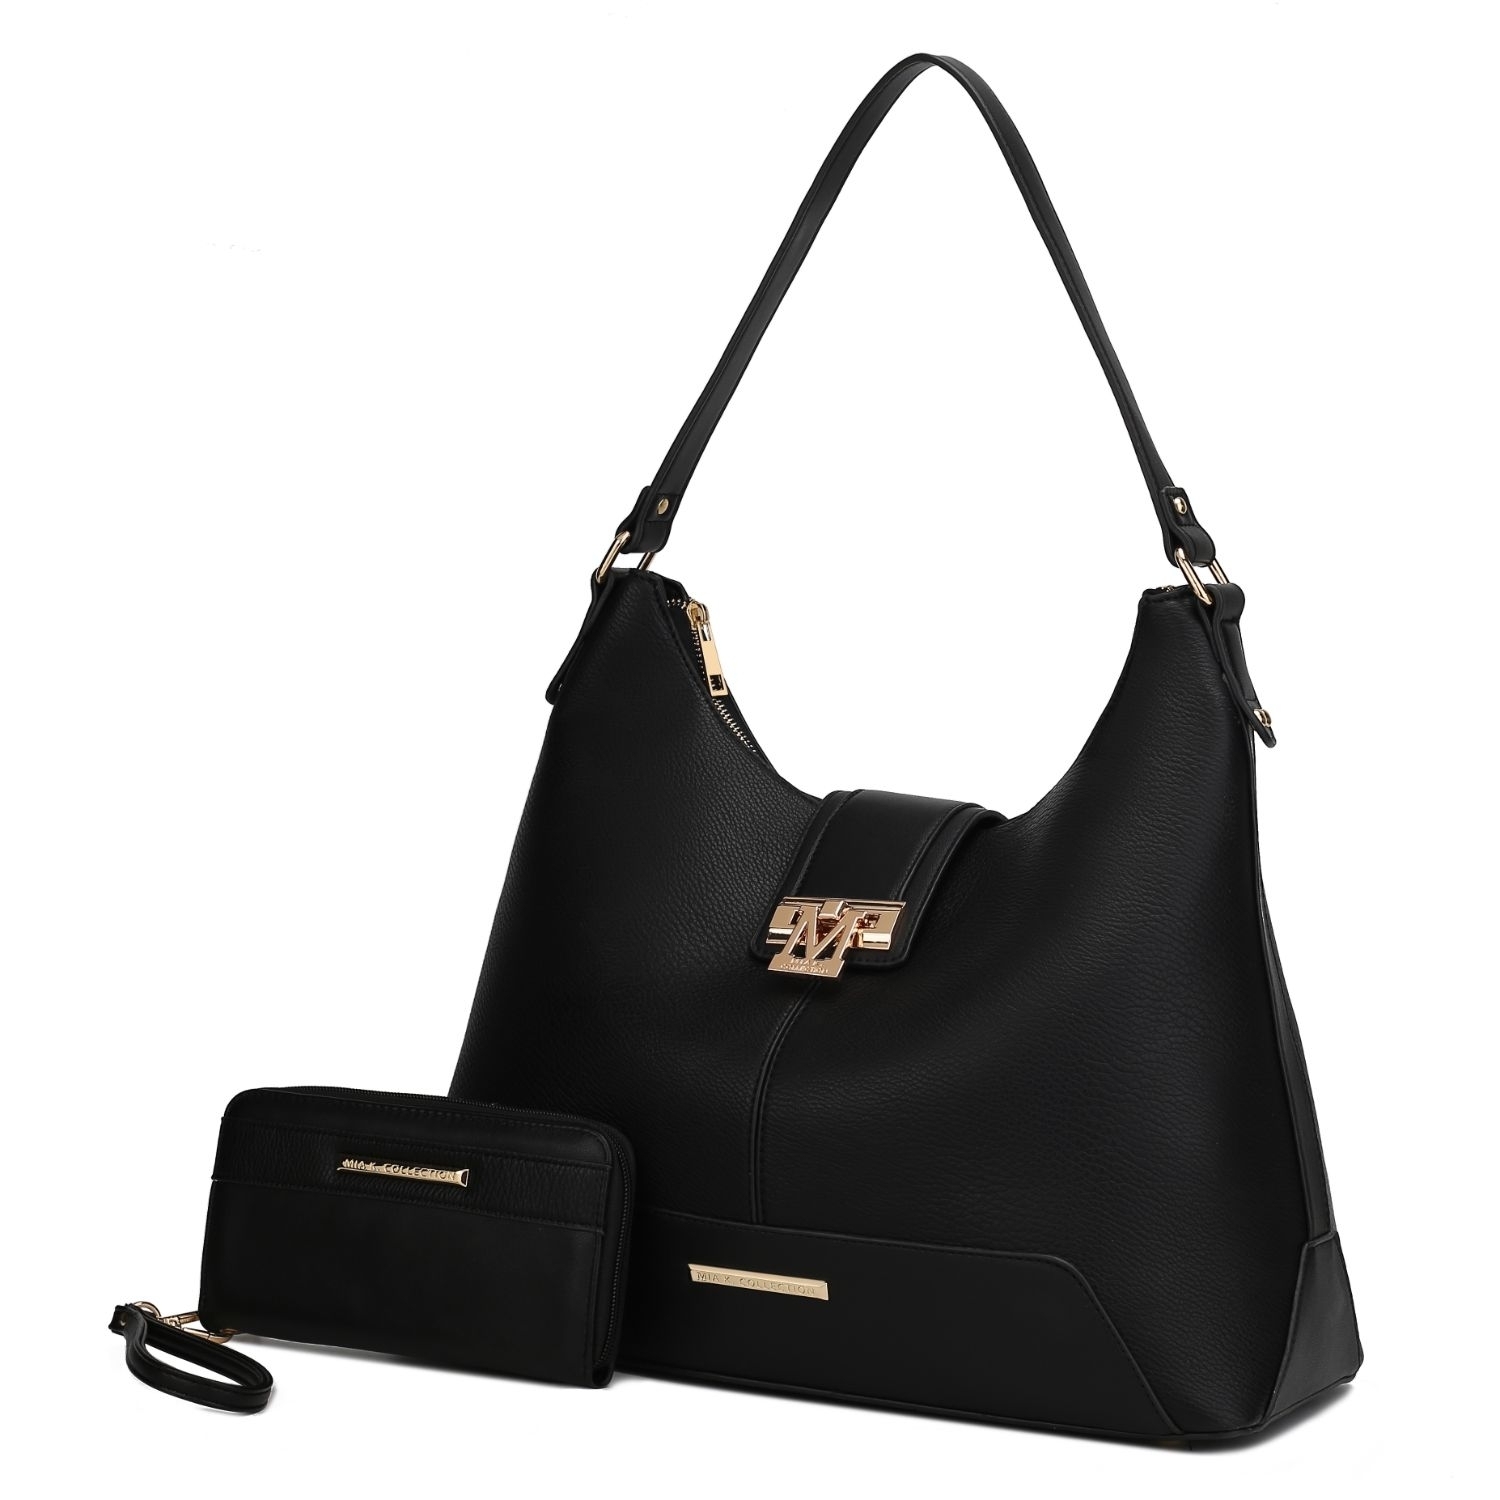 MKF Collection Graciela Hobo Handbag By Mia K. - Charcoal